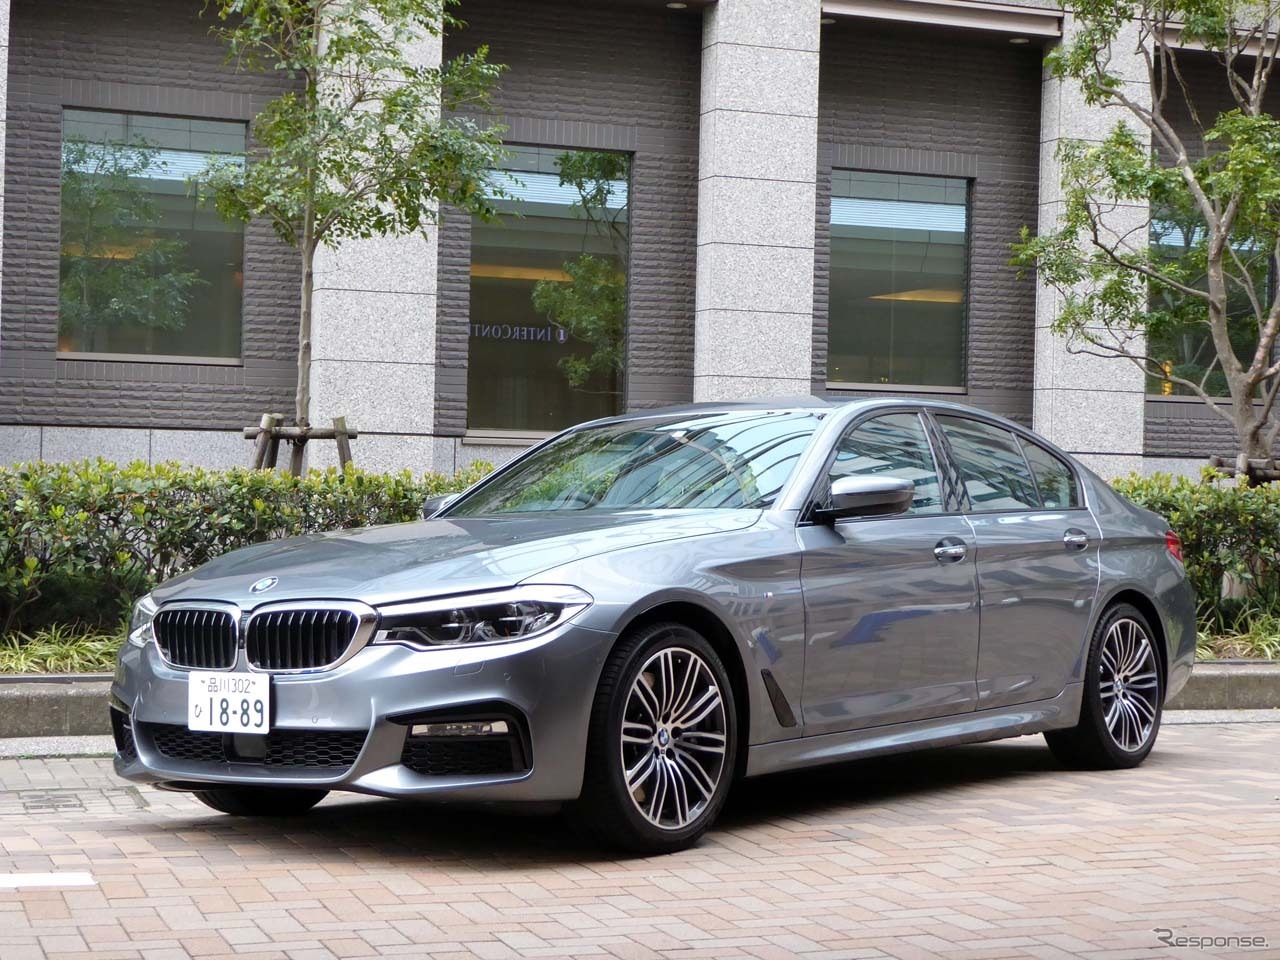 ニュアンス・コミュニケーションズの音声認識・自然言語処理技術の車載器を搭載する新型BMW「5シリーズ」